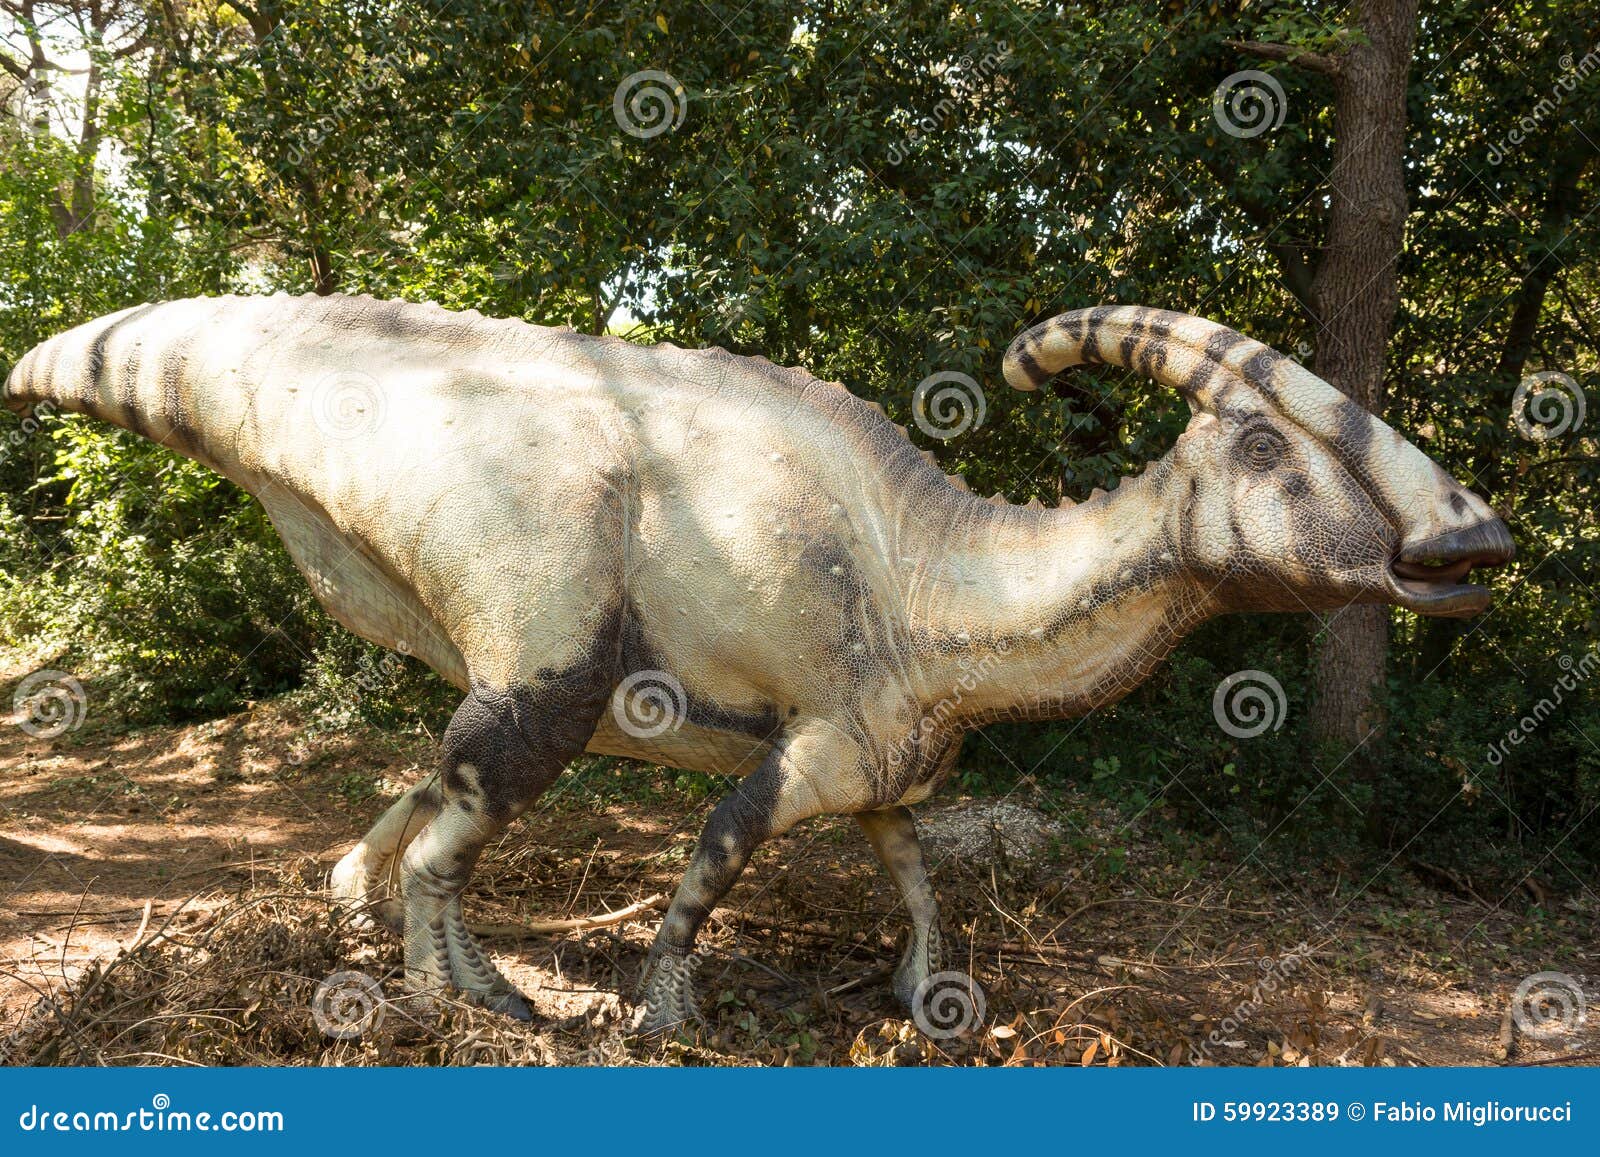 Pflanzenfressender Dinosaurier Mit Dem Horn Das Tone Ausstrahlt Stockbild Bild Von Horn Tone